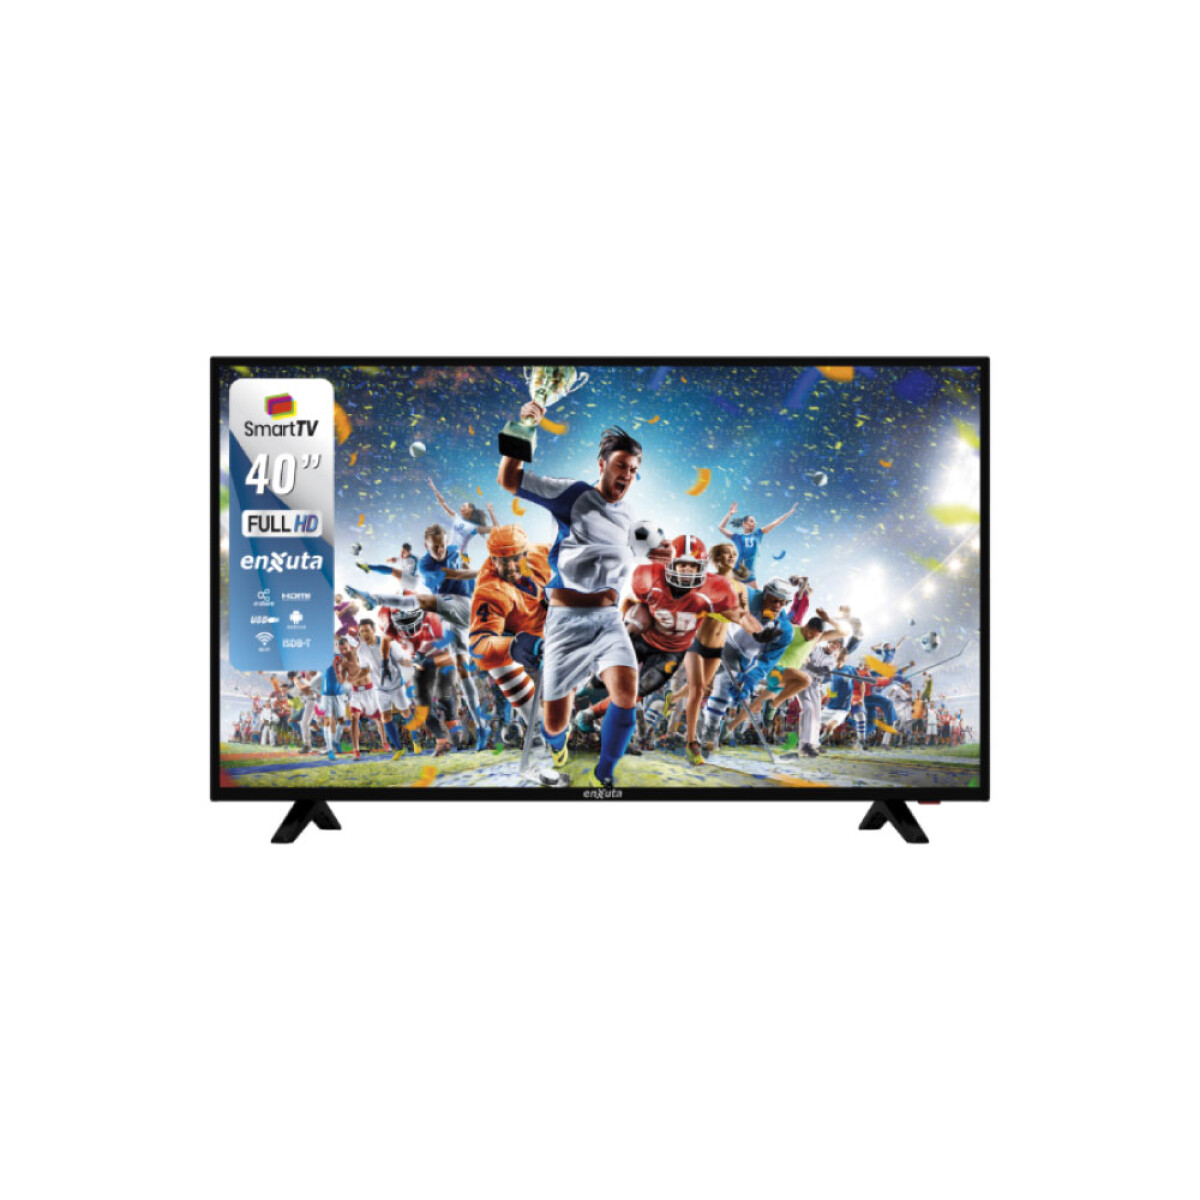 Smart Tv Enxuta Ledenx40s2k Full Hd 40 100v/240v 